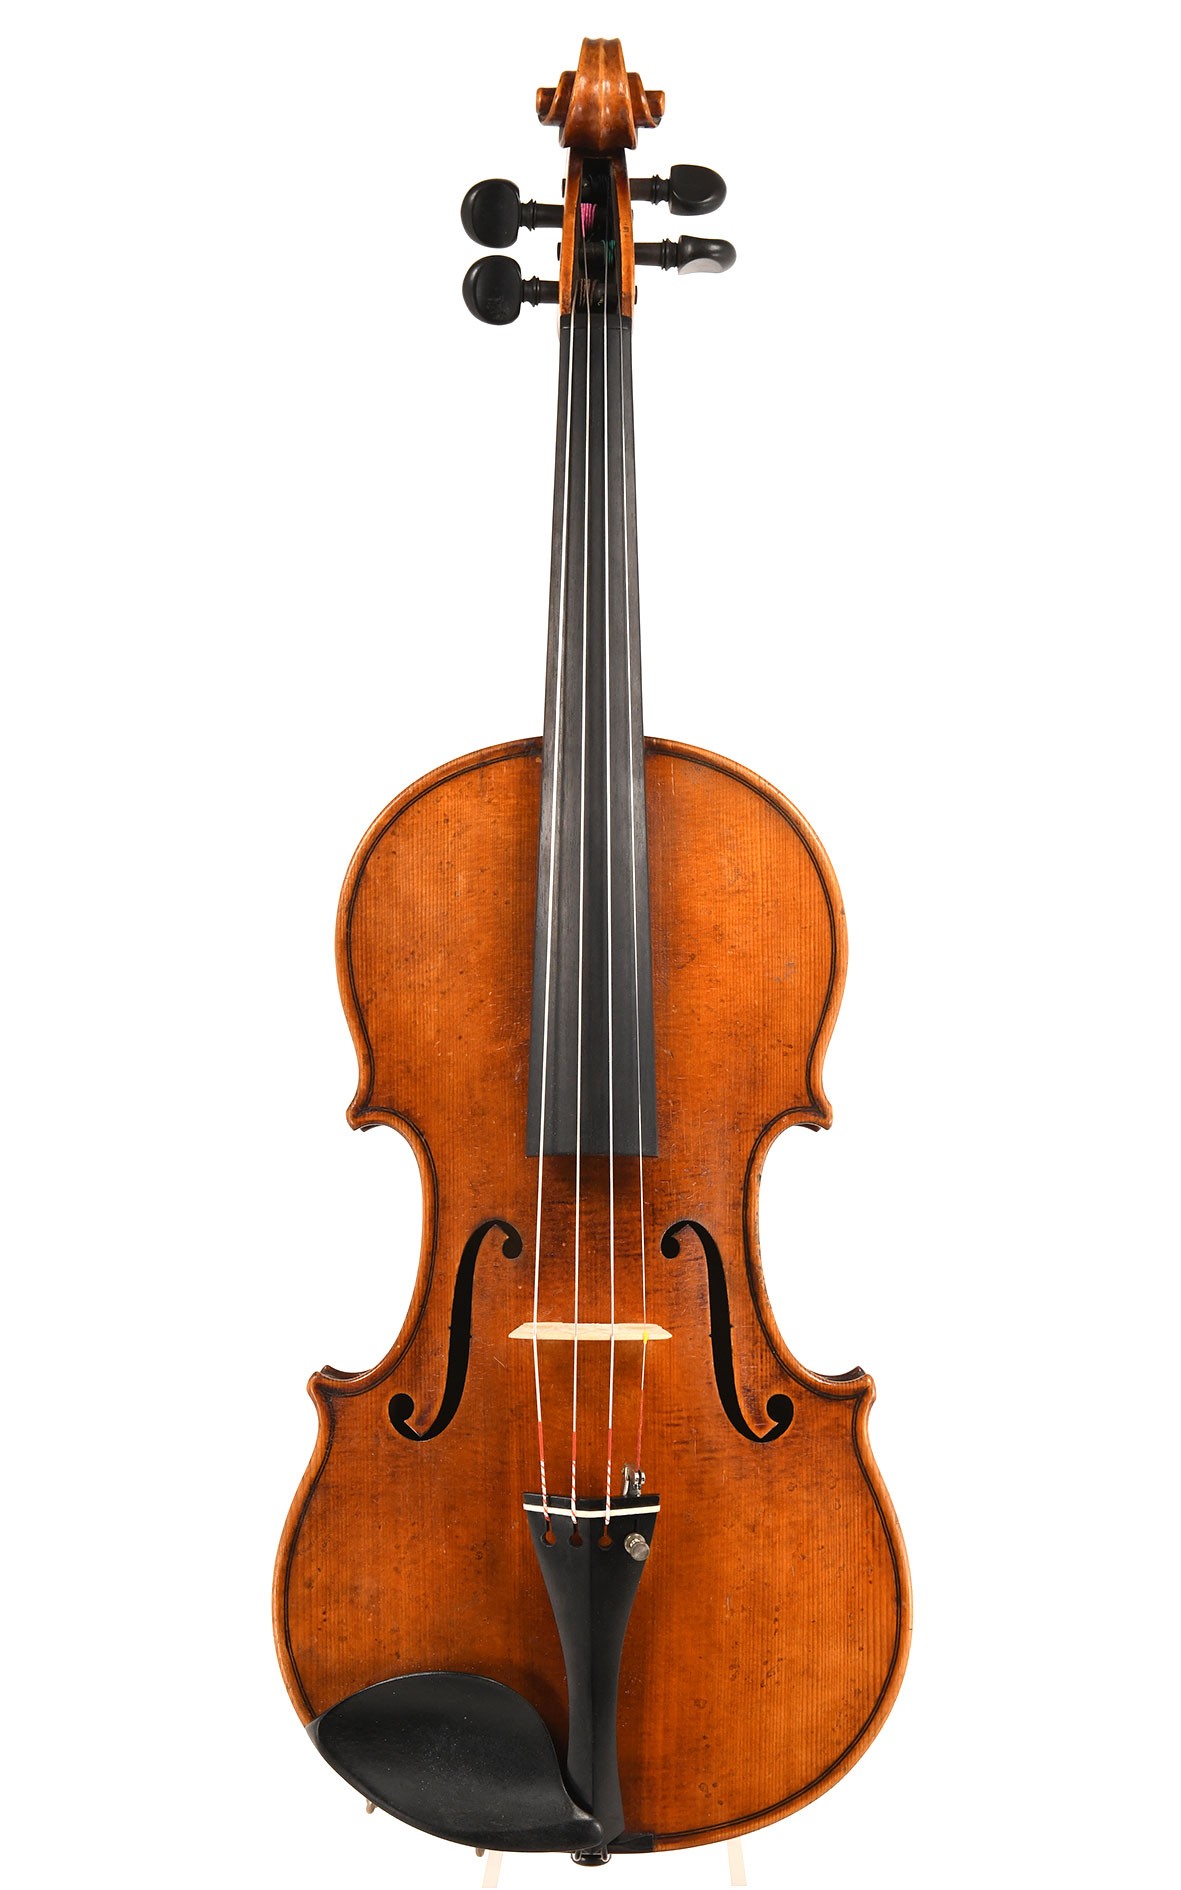 Violin after Guarnerius del Gesu